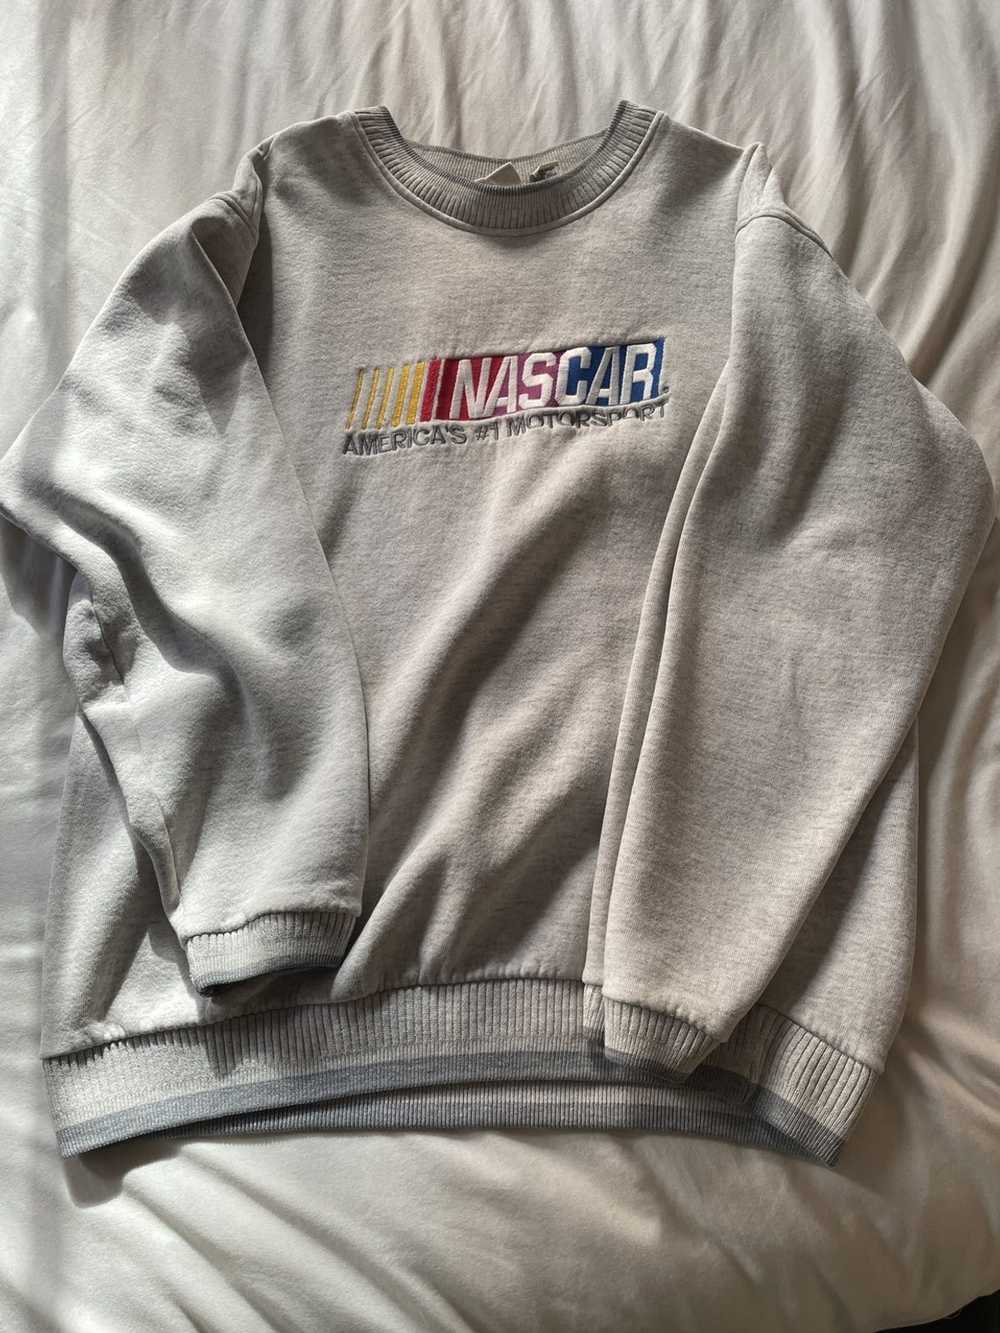 NASCAR Vintage NASCAR sweater - image 2